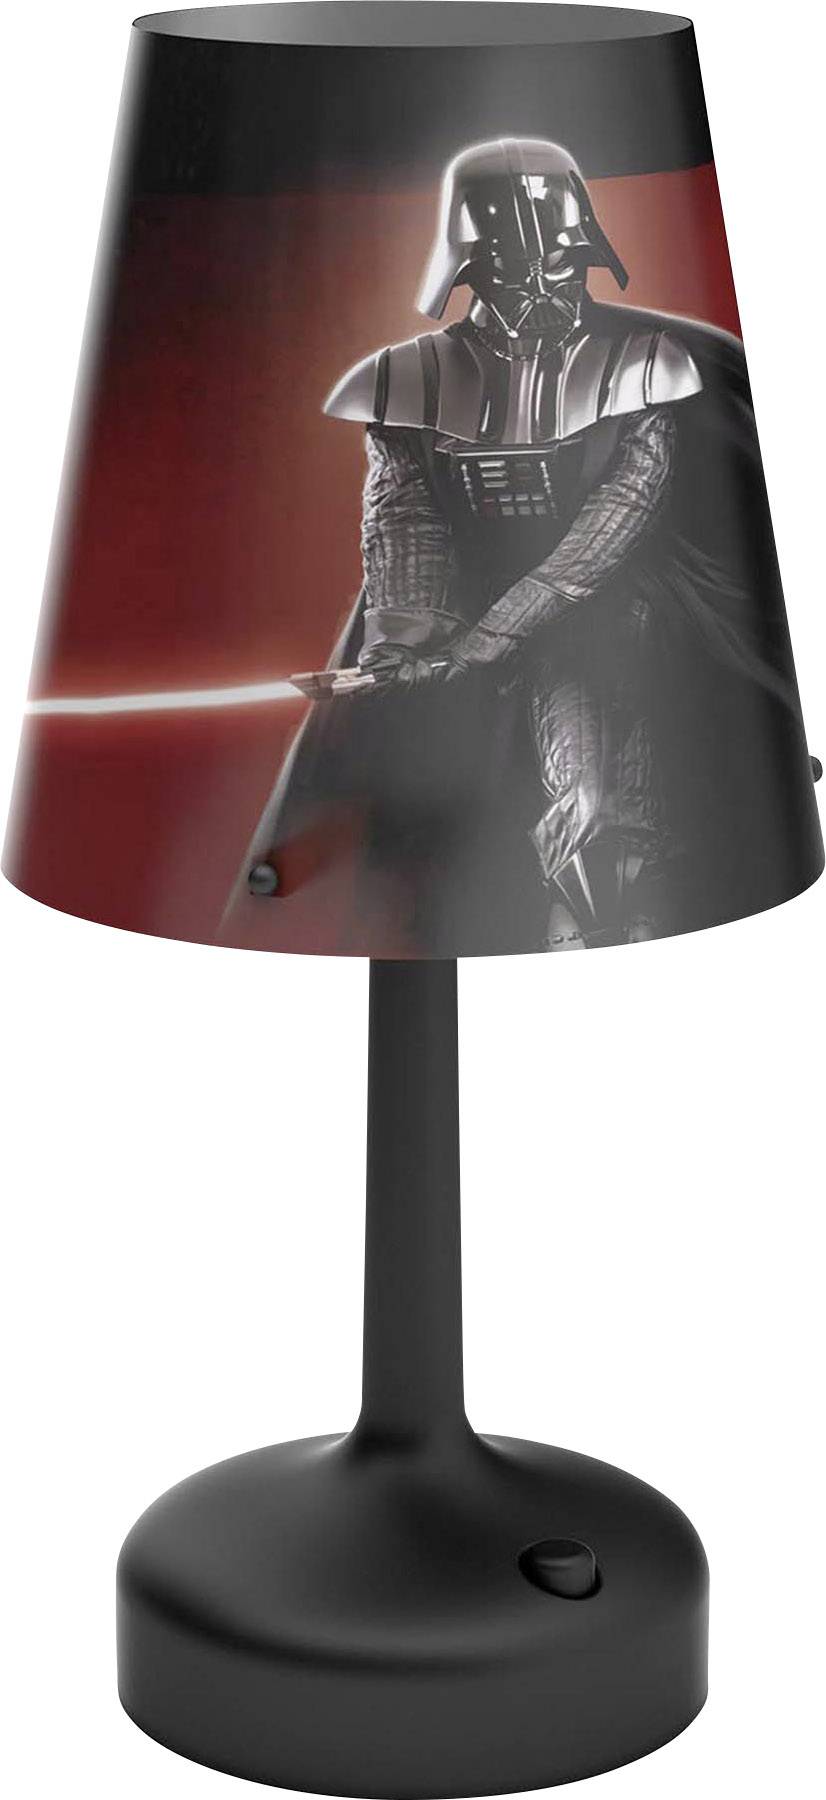 Philips Lighting Led Table Lamp Darth Vader Led Monochrome Built